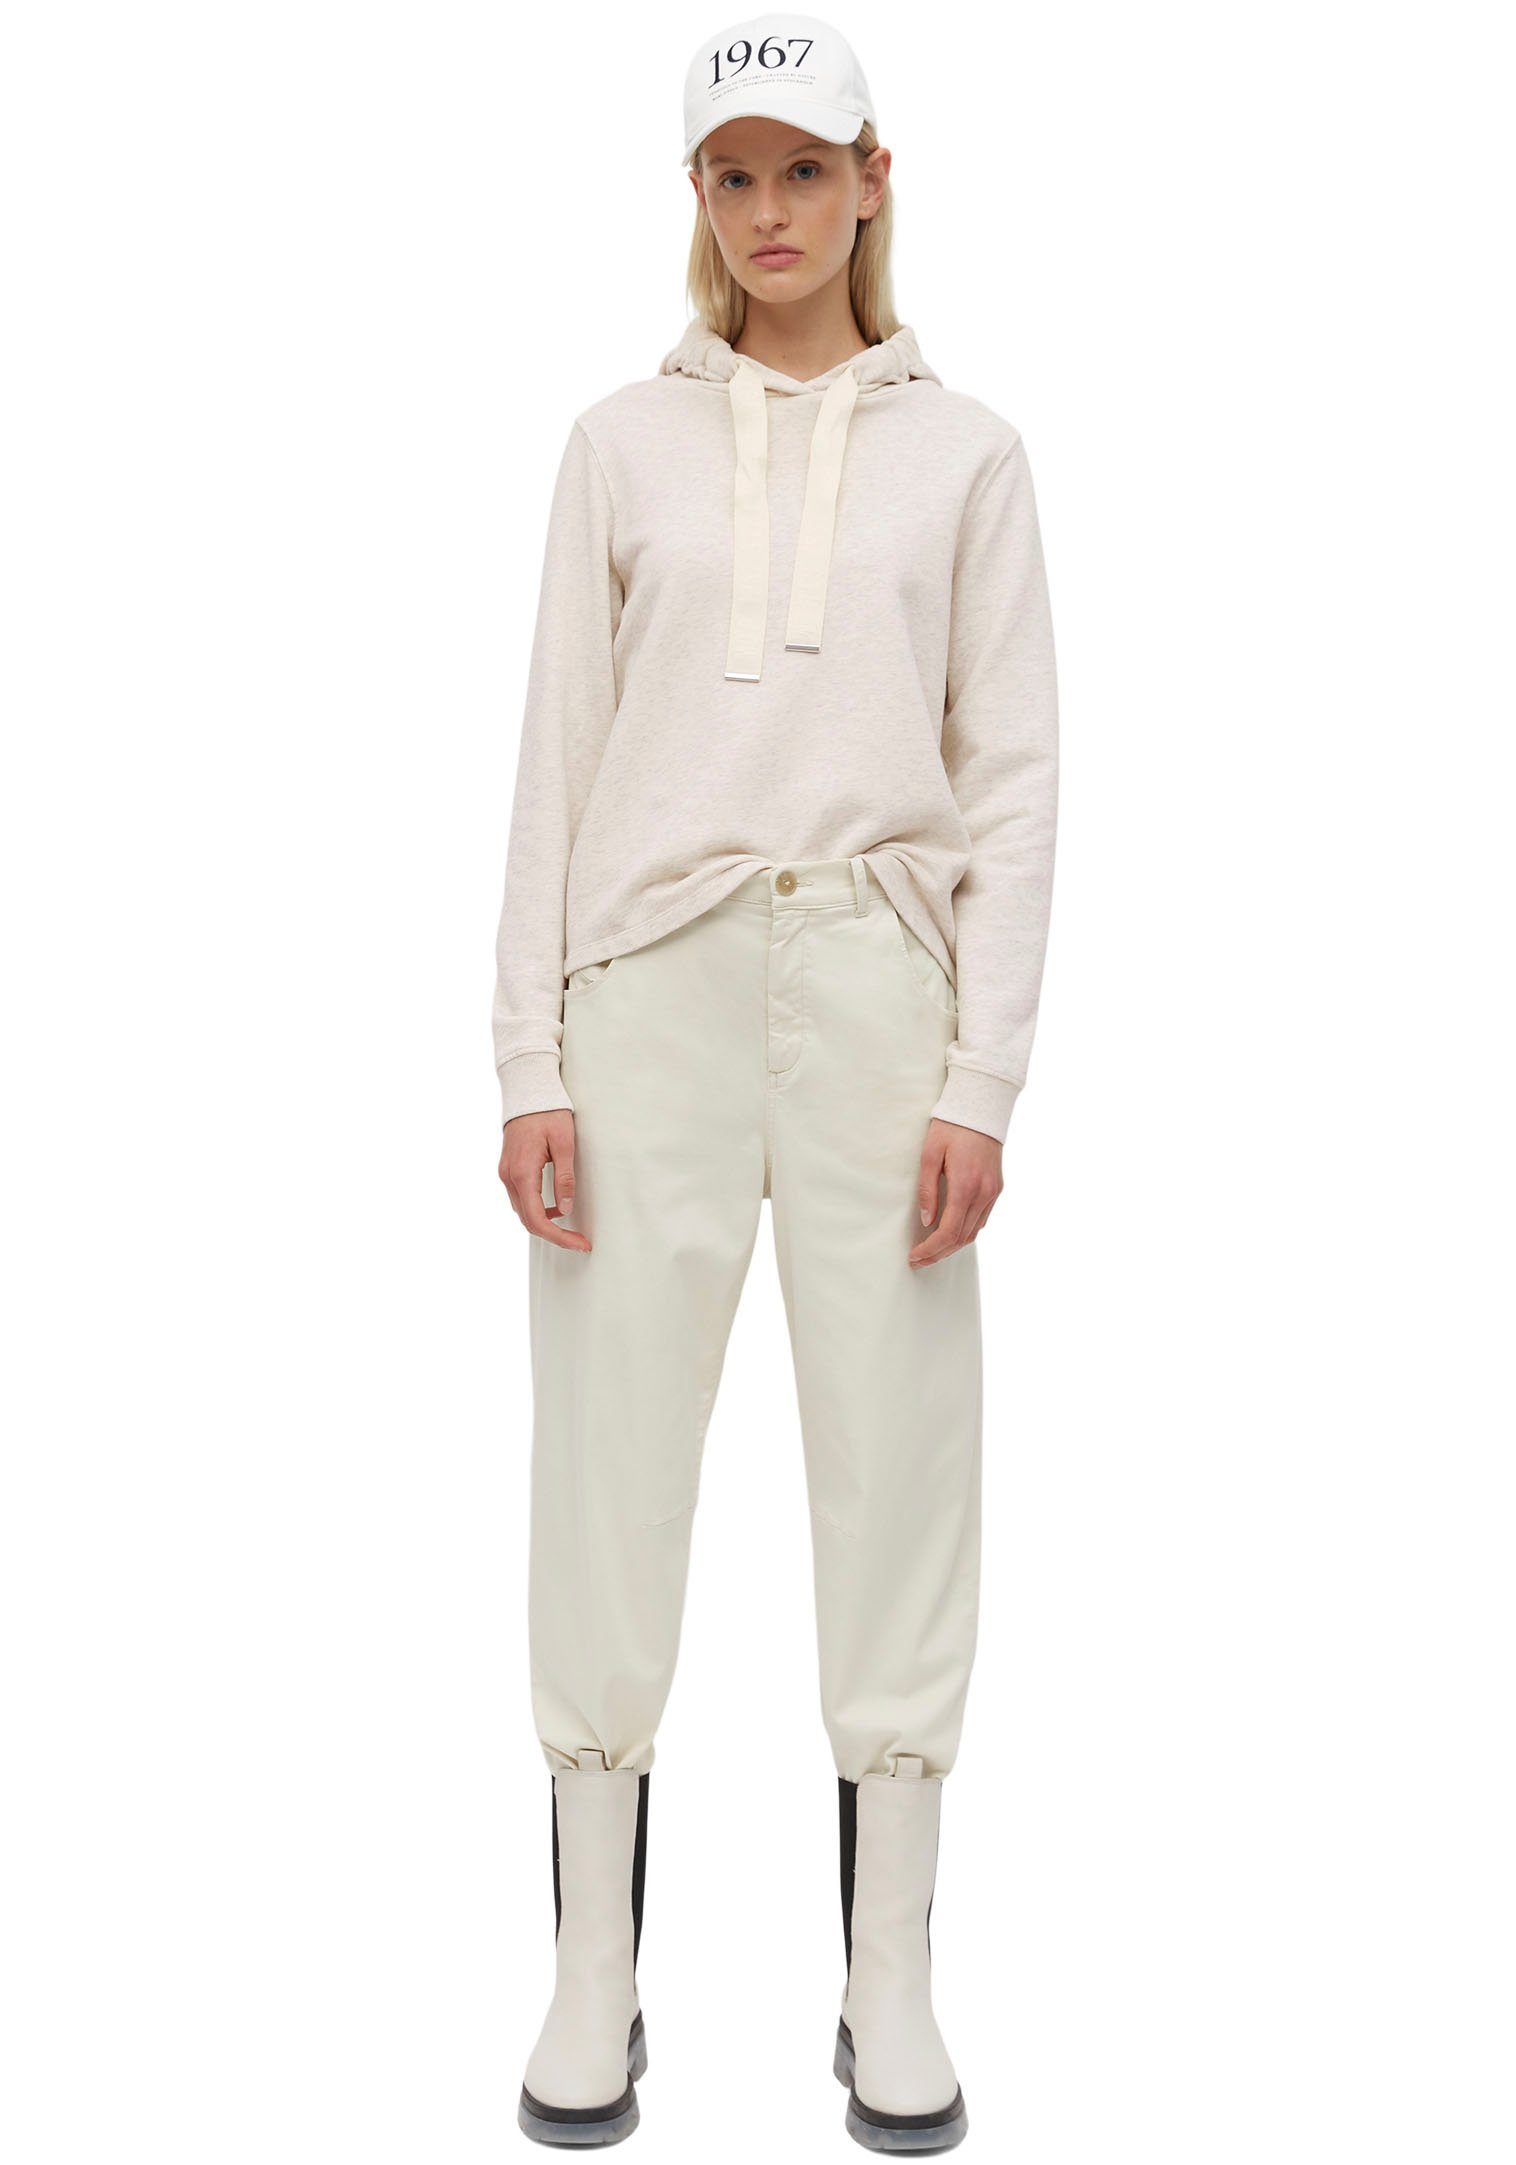 Marc O'Polo Marken-Bindeband mit breitem Kapuzensweatshirt beige-grau-meliert